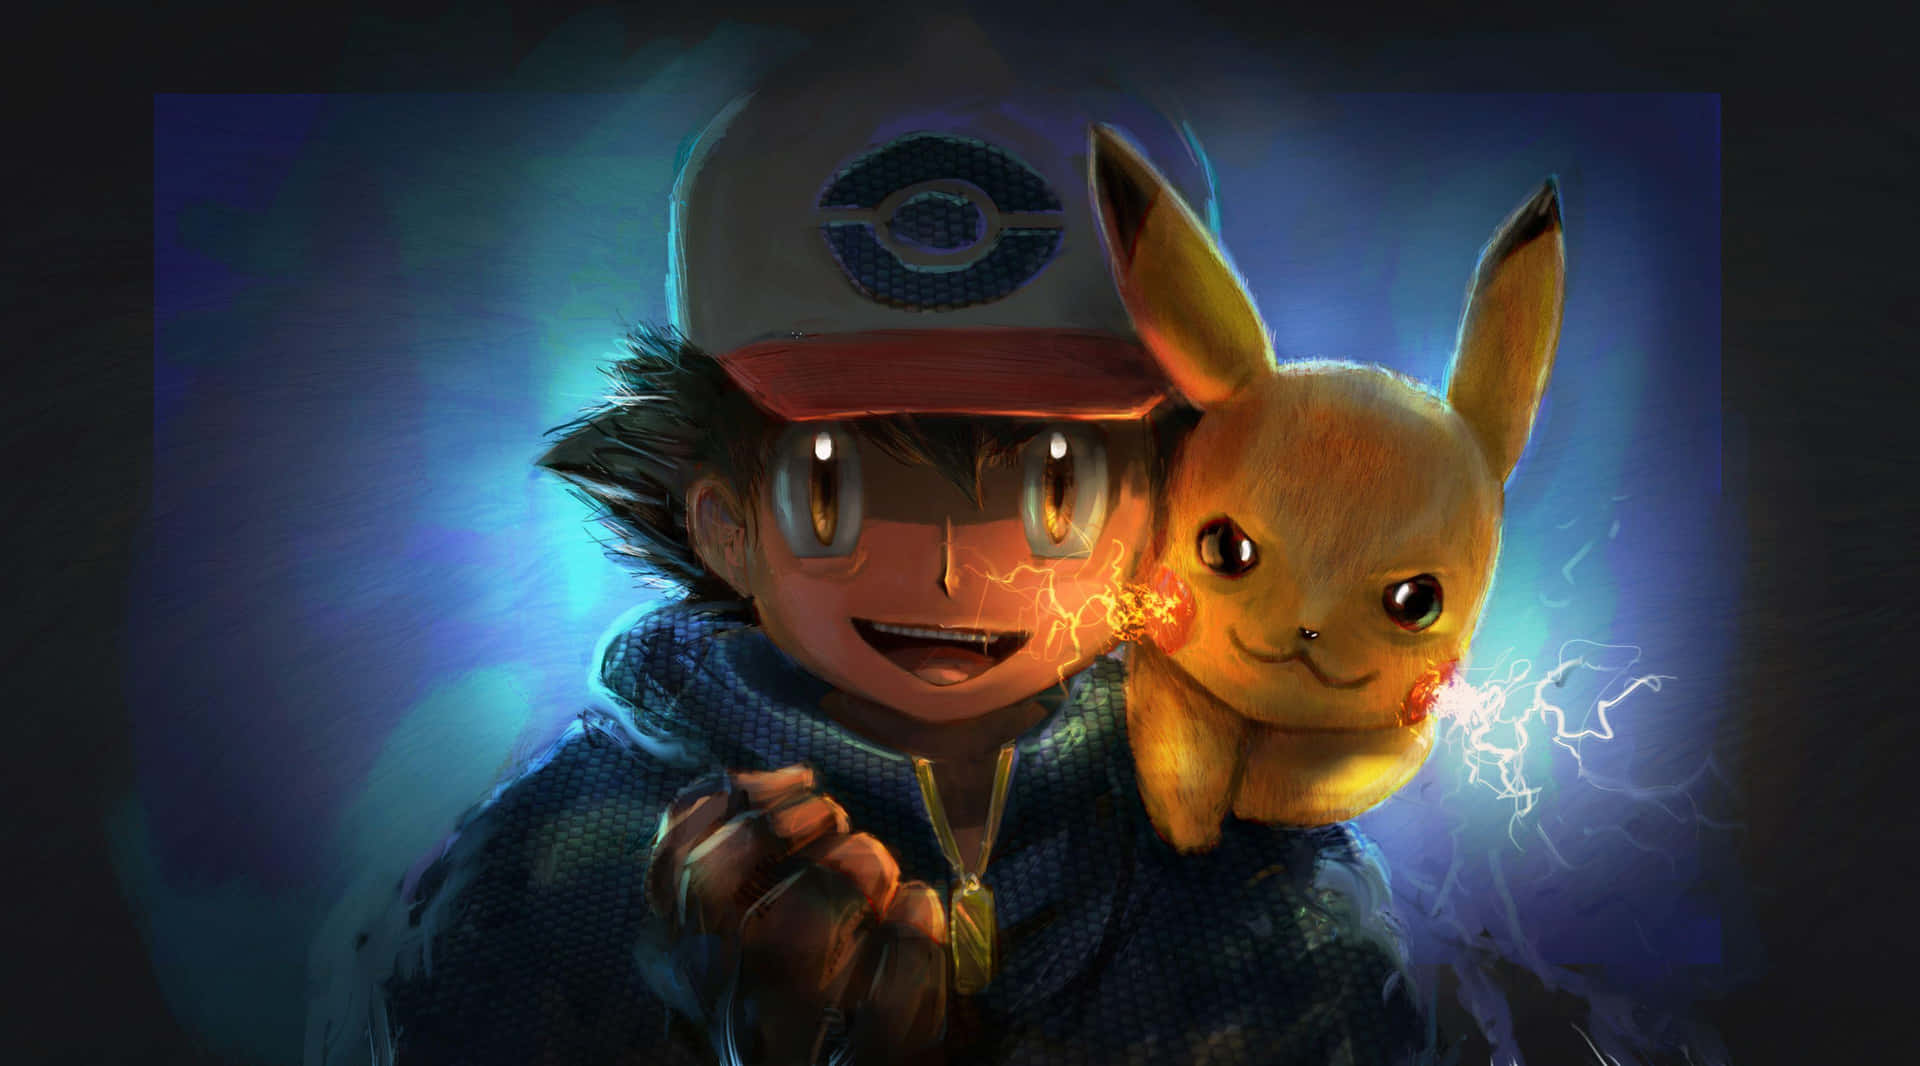 Ashand Pikachu Adventure Art Wallpaper